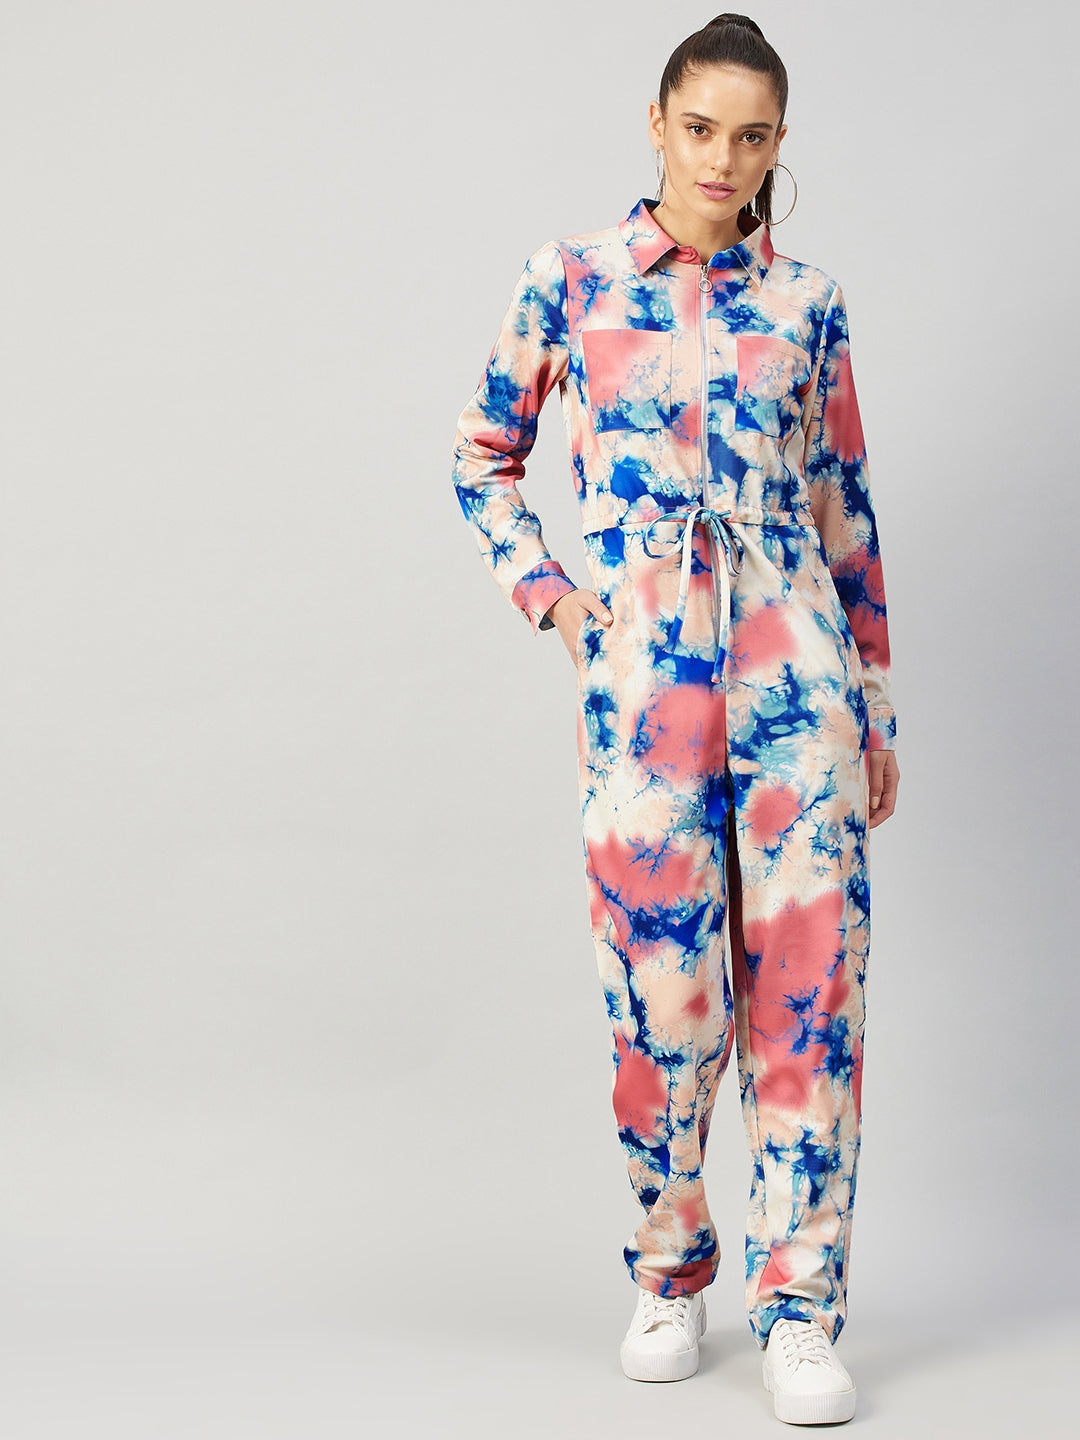 Athena Pink & Blue Printed Basic Jumpsuit - Athena Lifestyle